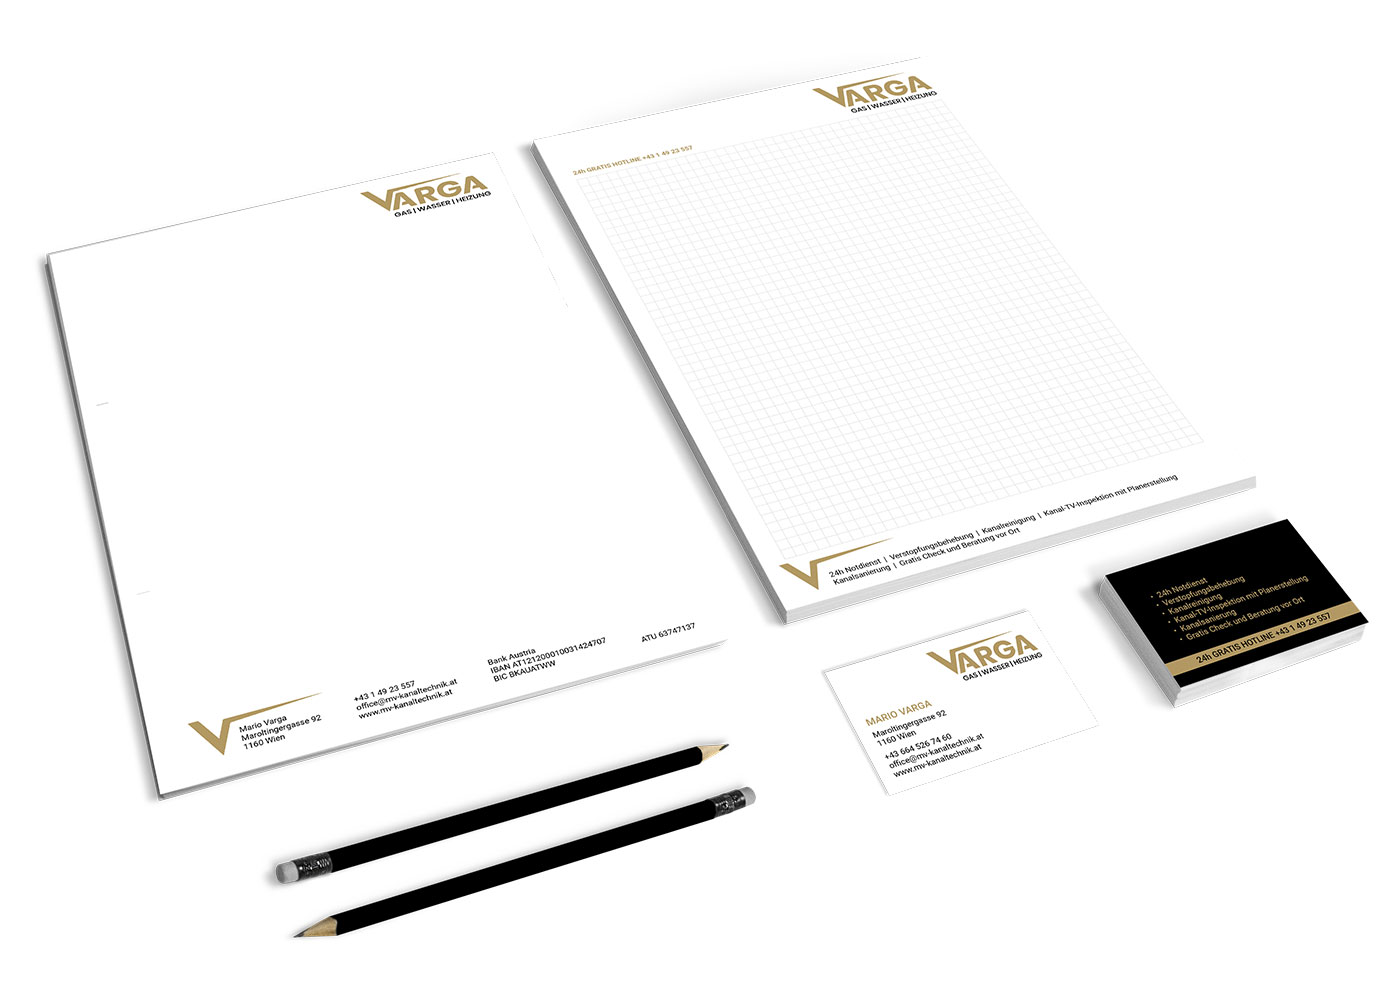 VARGA – Corporate Design